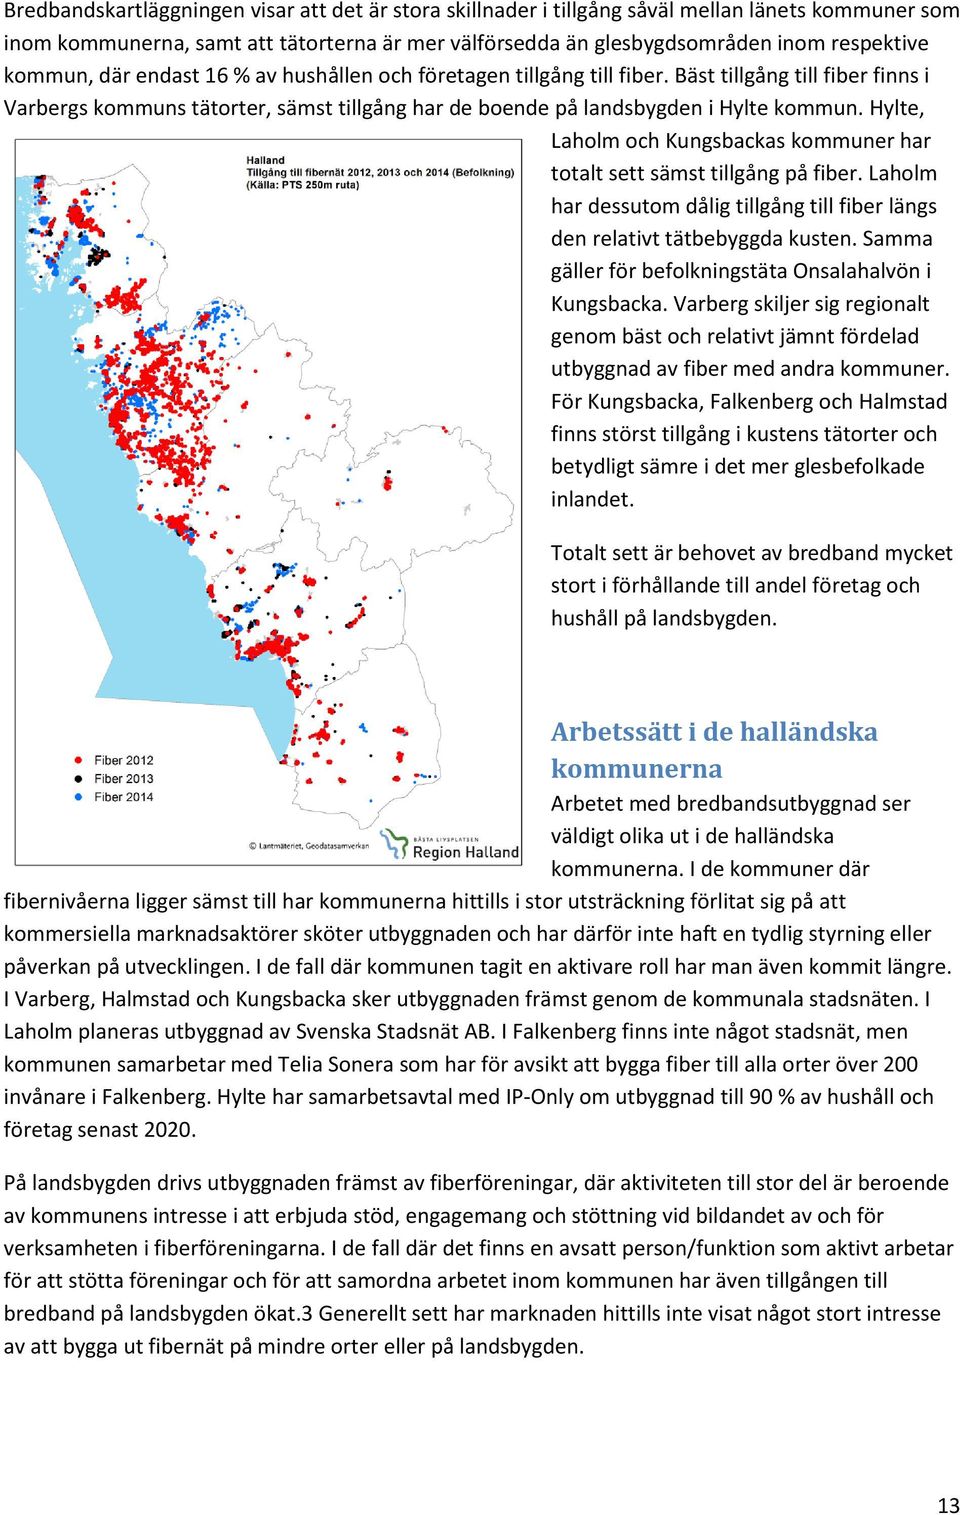 Hylte, Laholm och Kungsbackas kommuner har totalt sett sämst tillgång på fiber. Laholm har dessutom dålig tillgång till fiber längs den relativt tätbebyggda kusten.